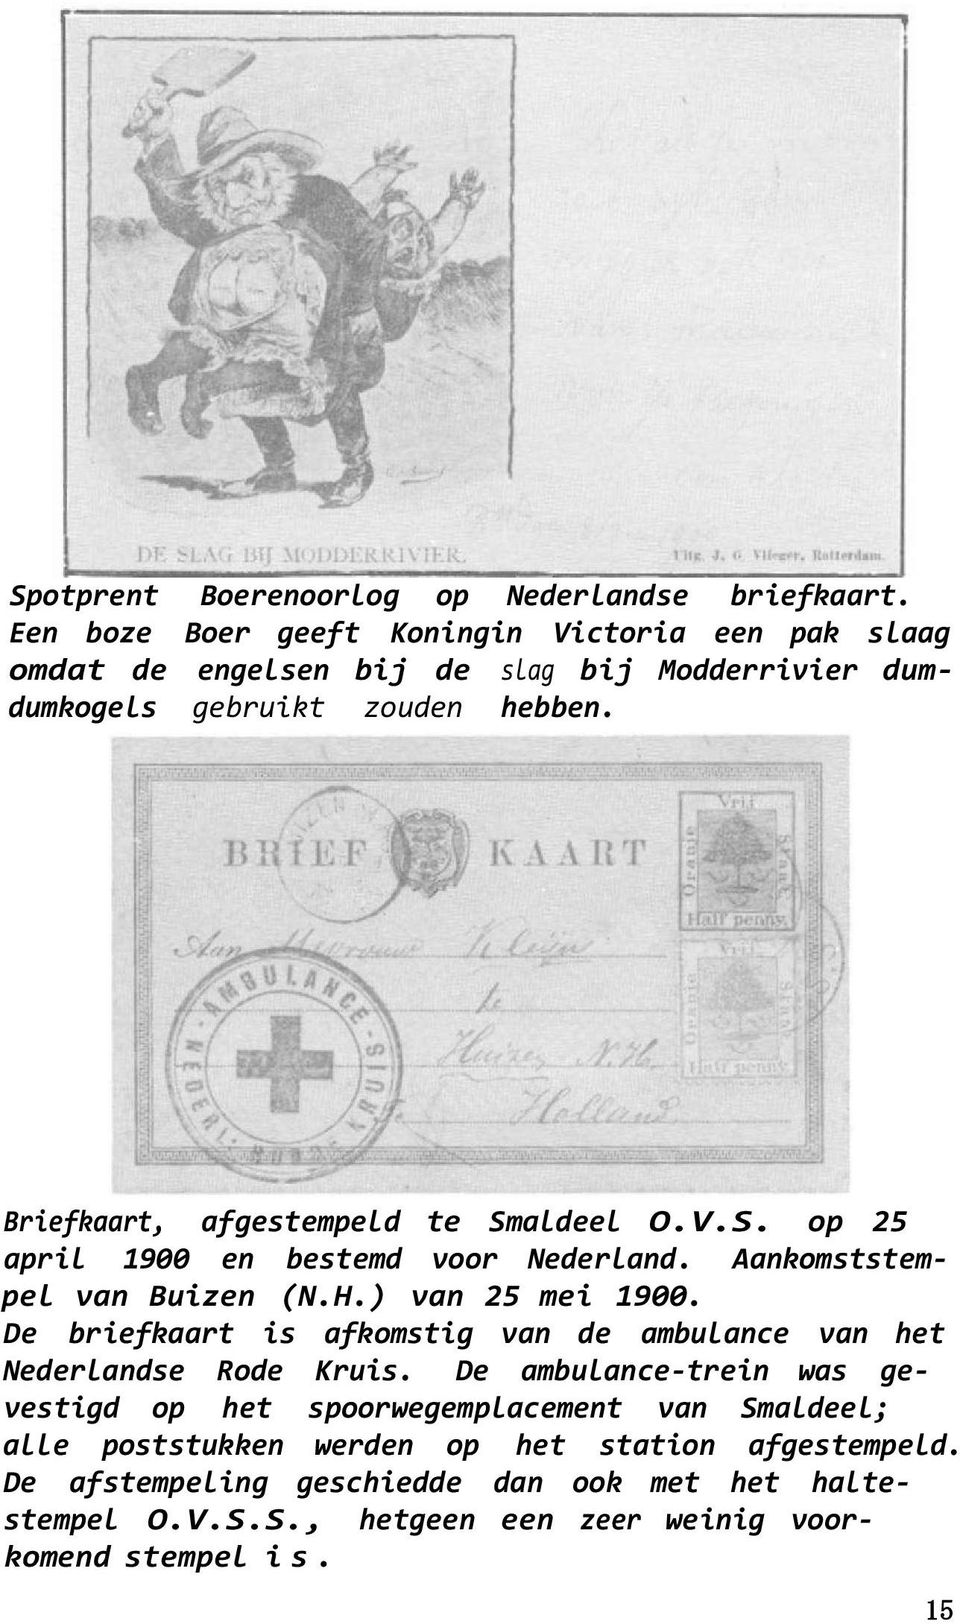 Briefkaart, afgestempeld te Smaldeel O.V.S. op 25 april 1900 en bestemd voor Nederland. Aankomststempel van Buizen (N.H.) van 25 mei 1900.